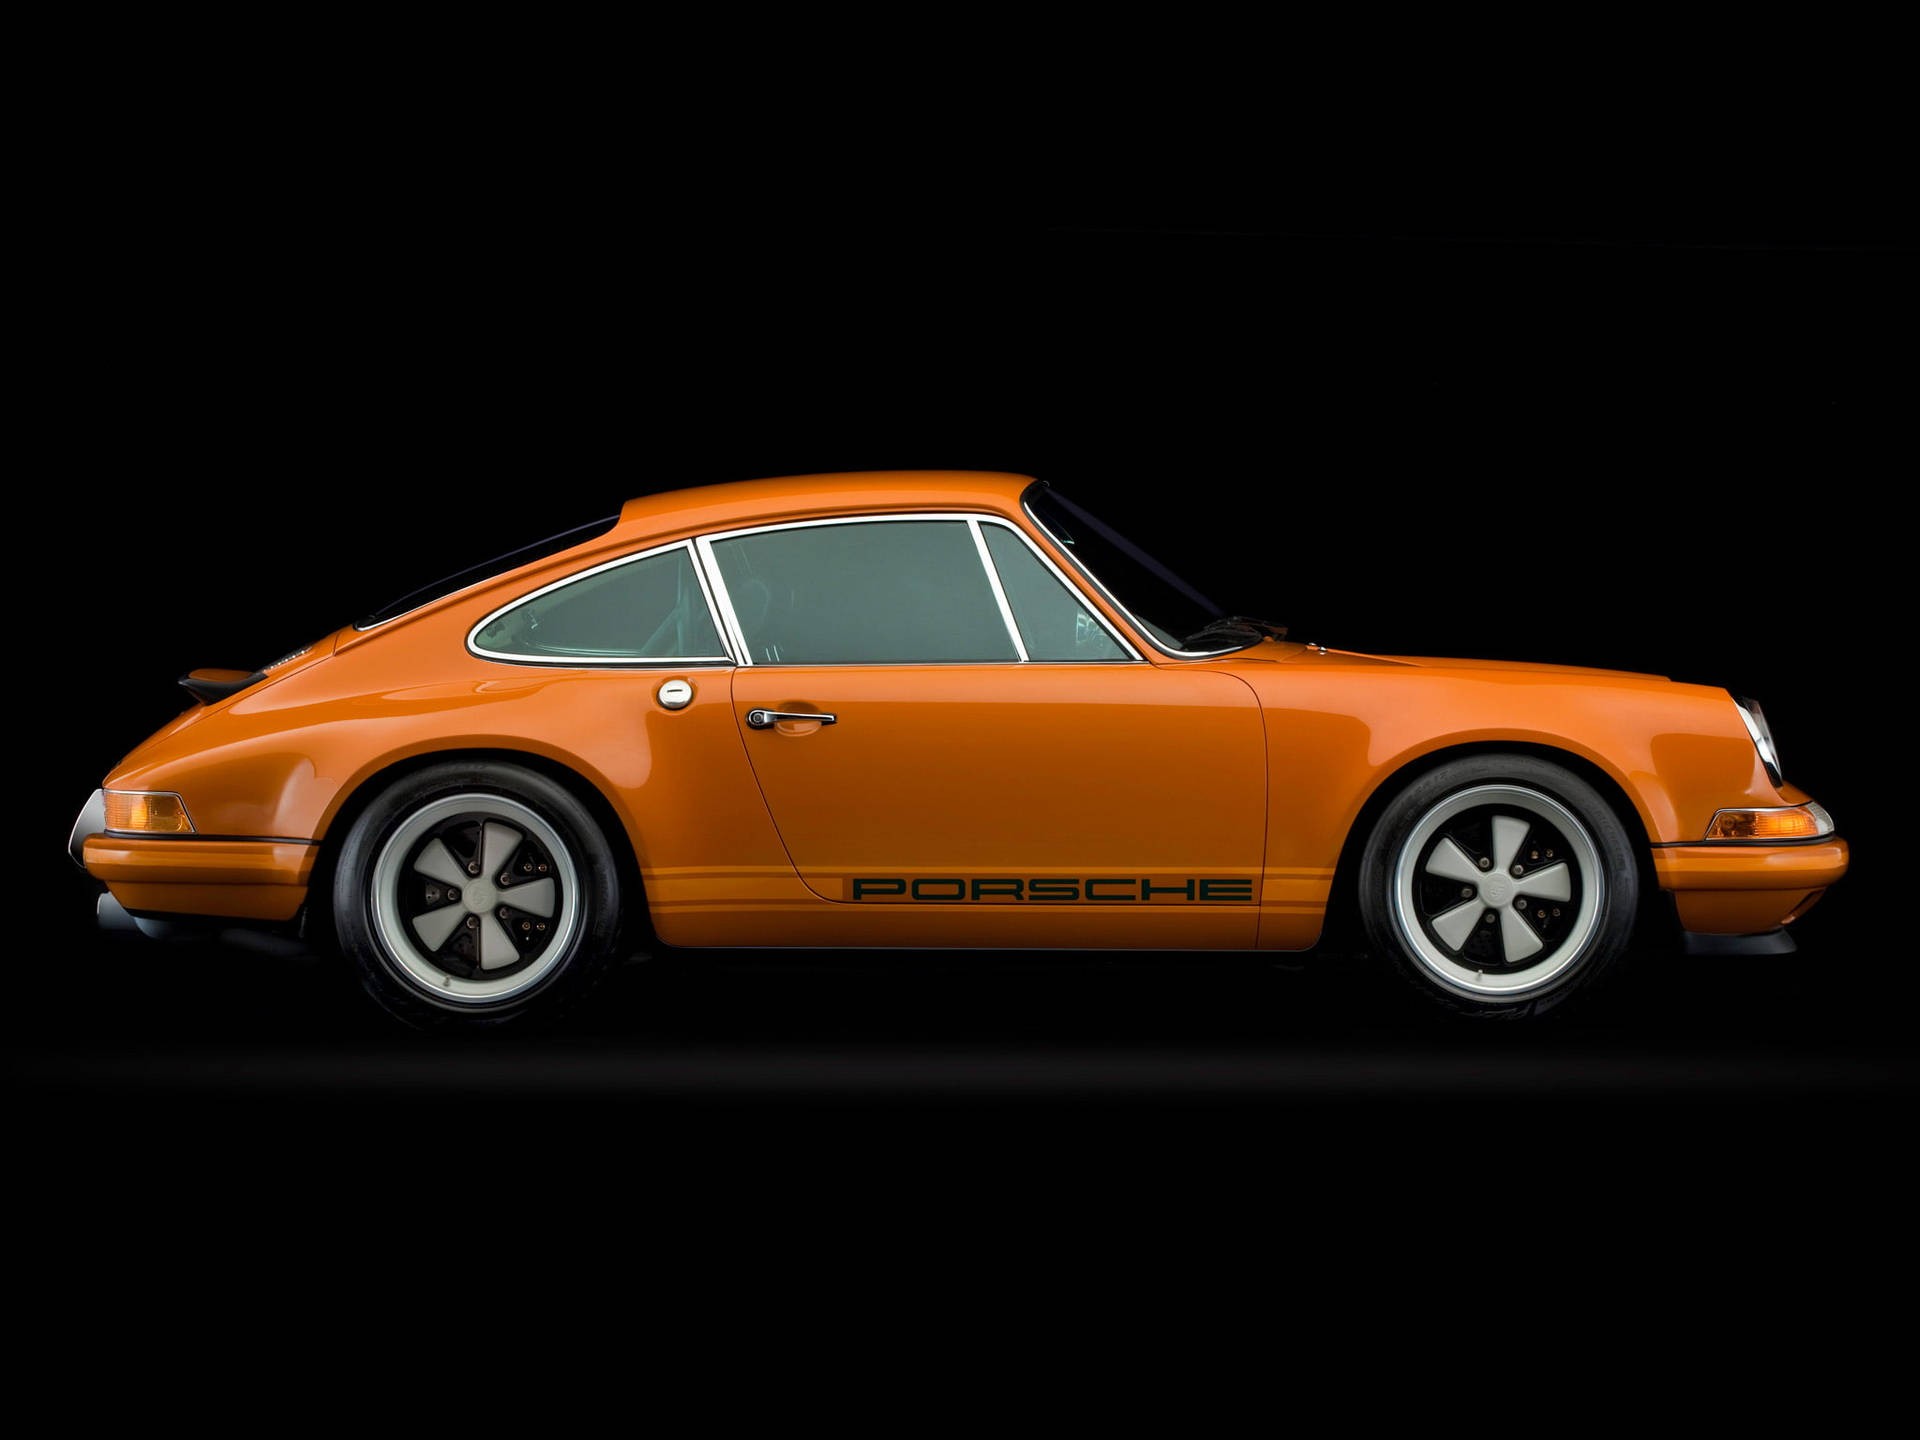 Orange Singer Porsche 912 Background